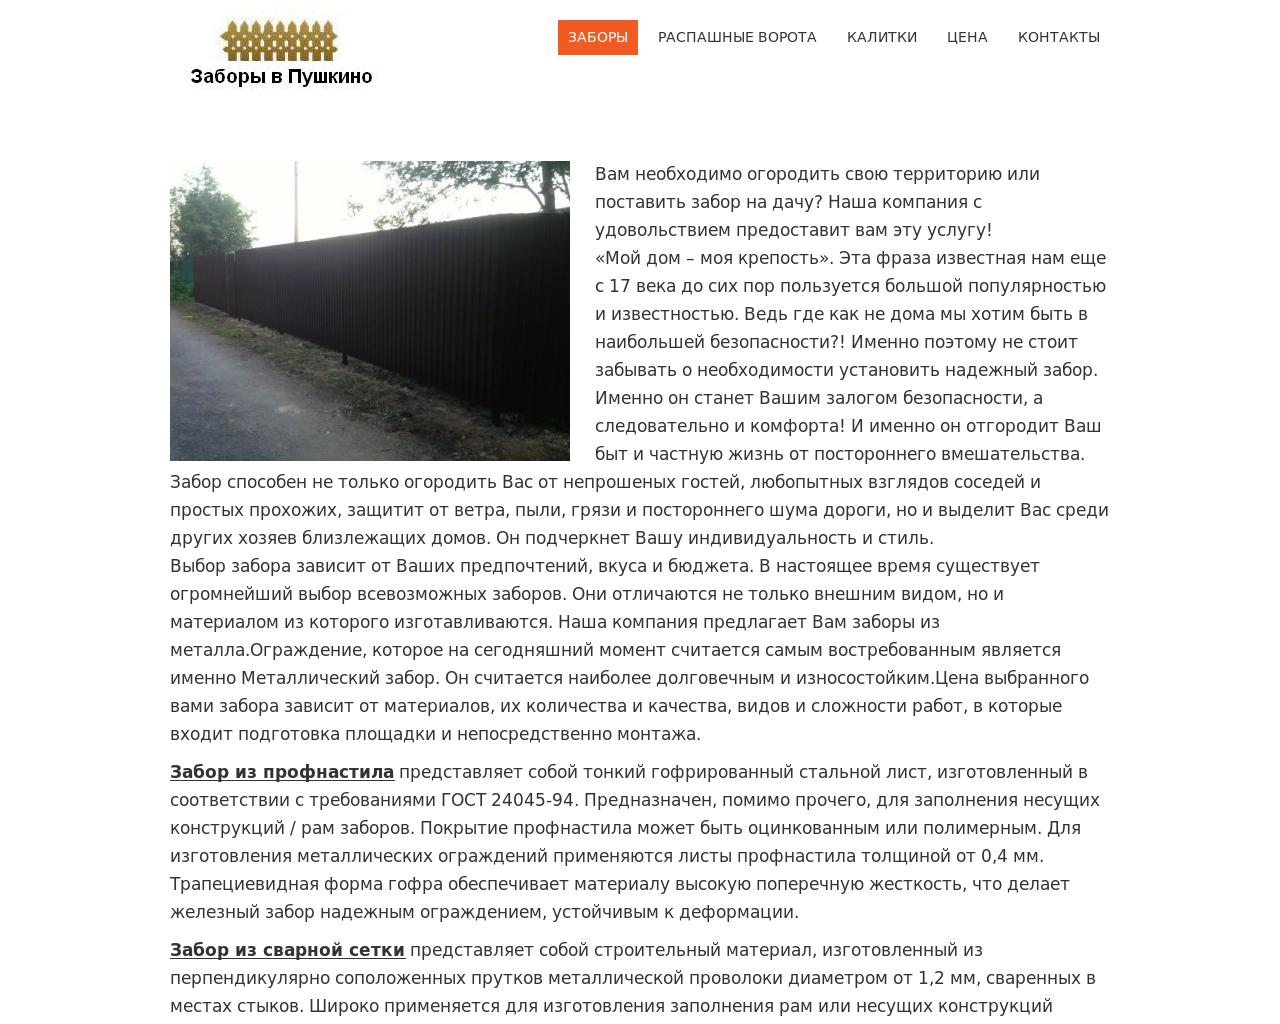 Изображение сайта zabory-v-pushkino.ru в разрешении 1280x1024